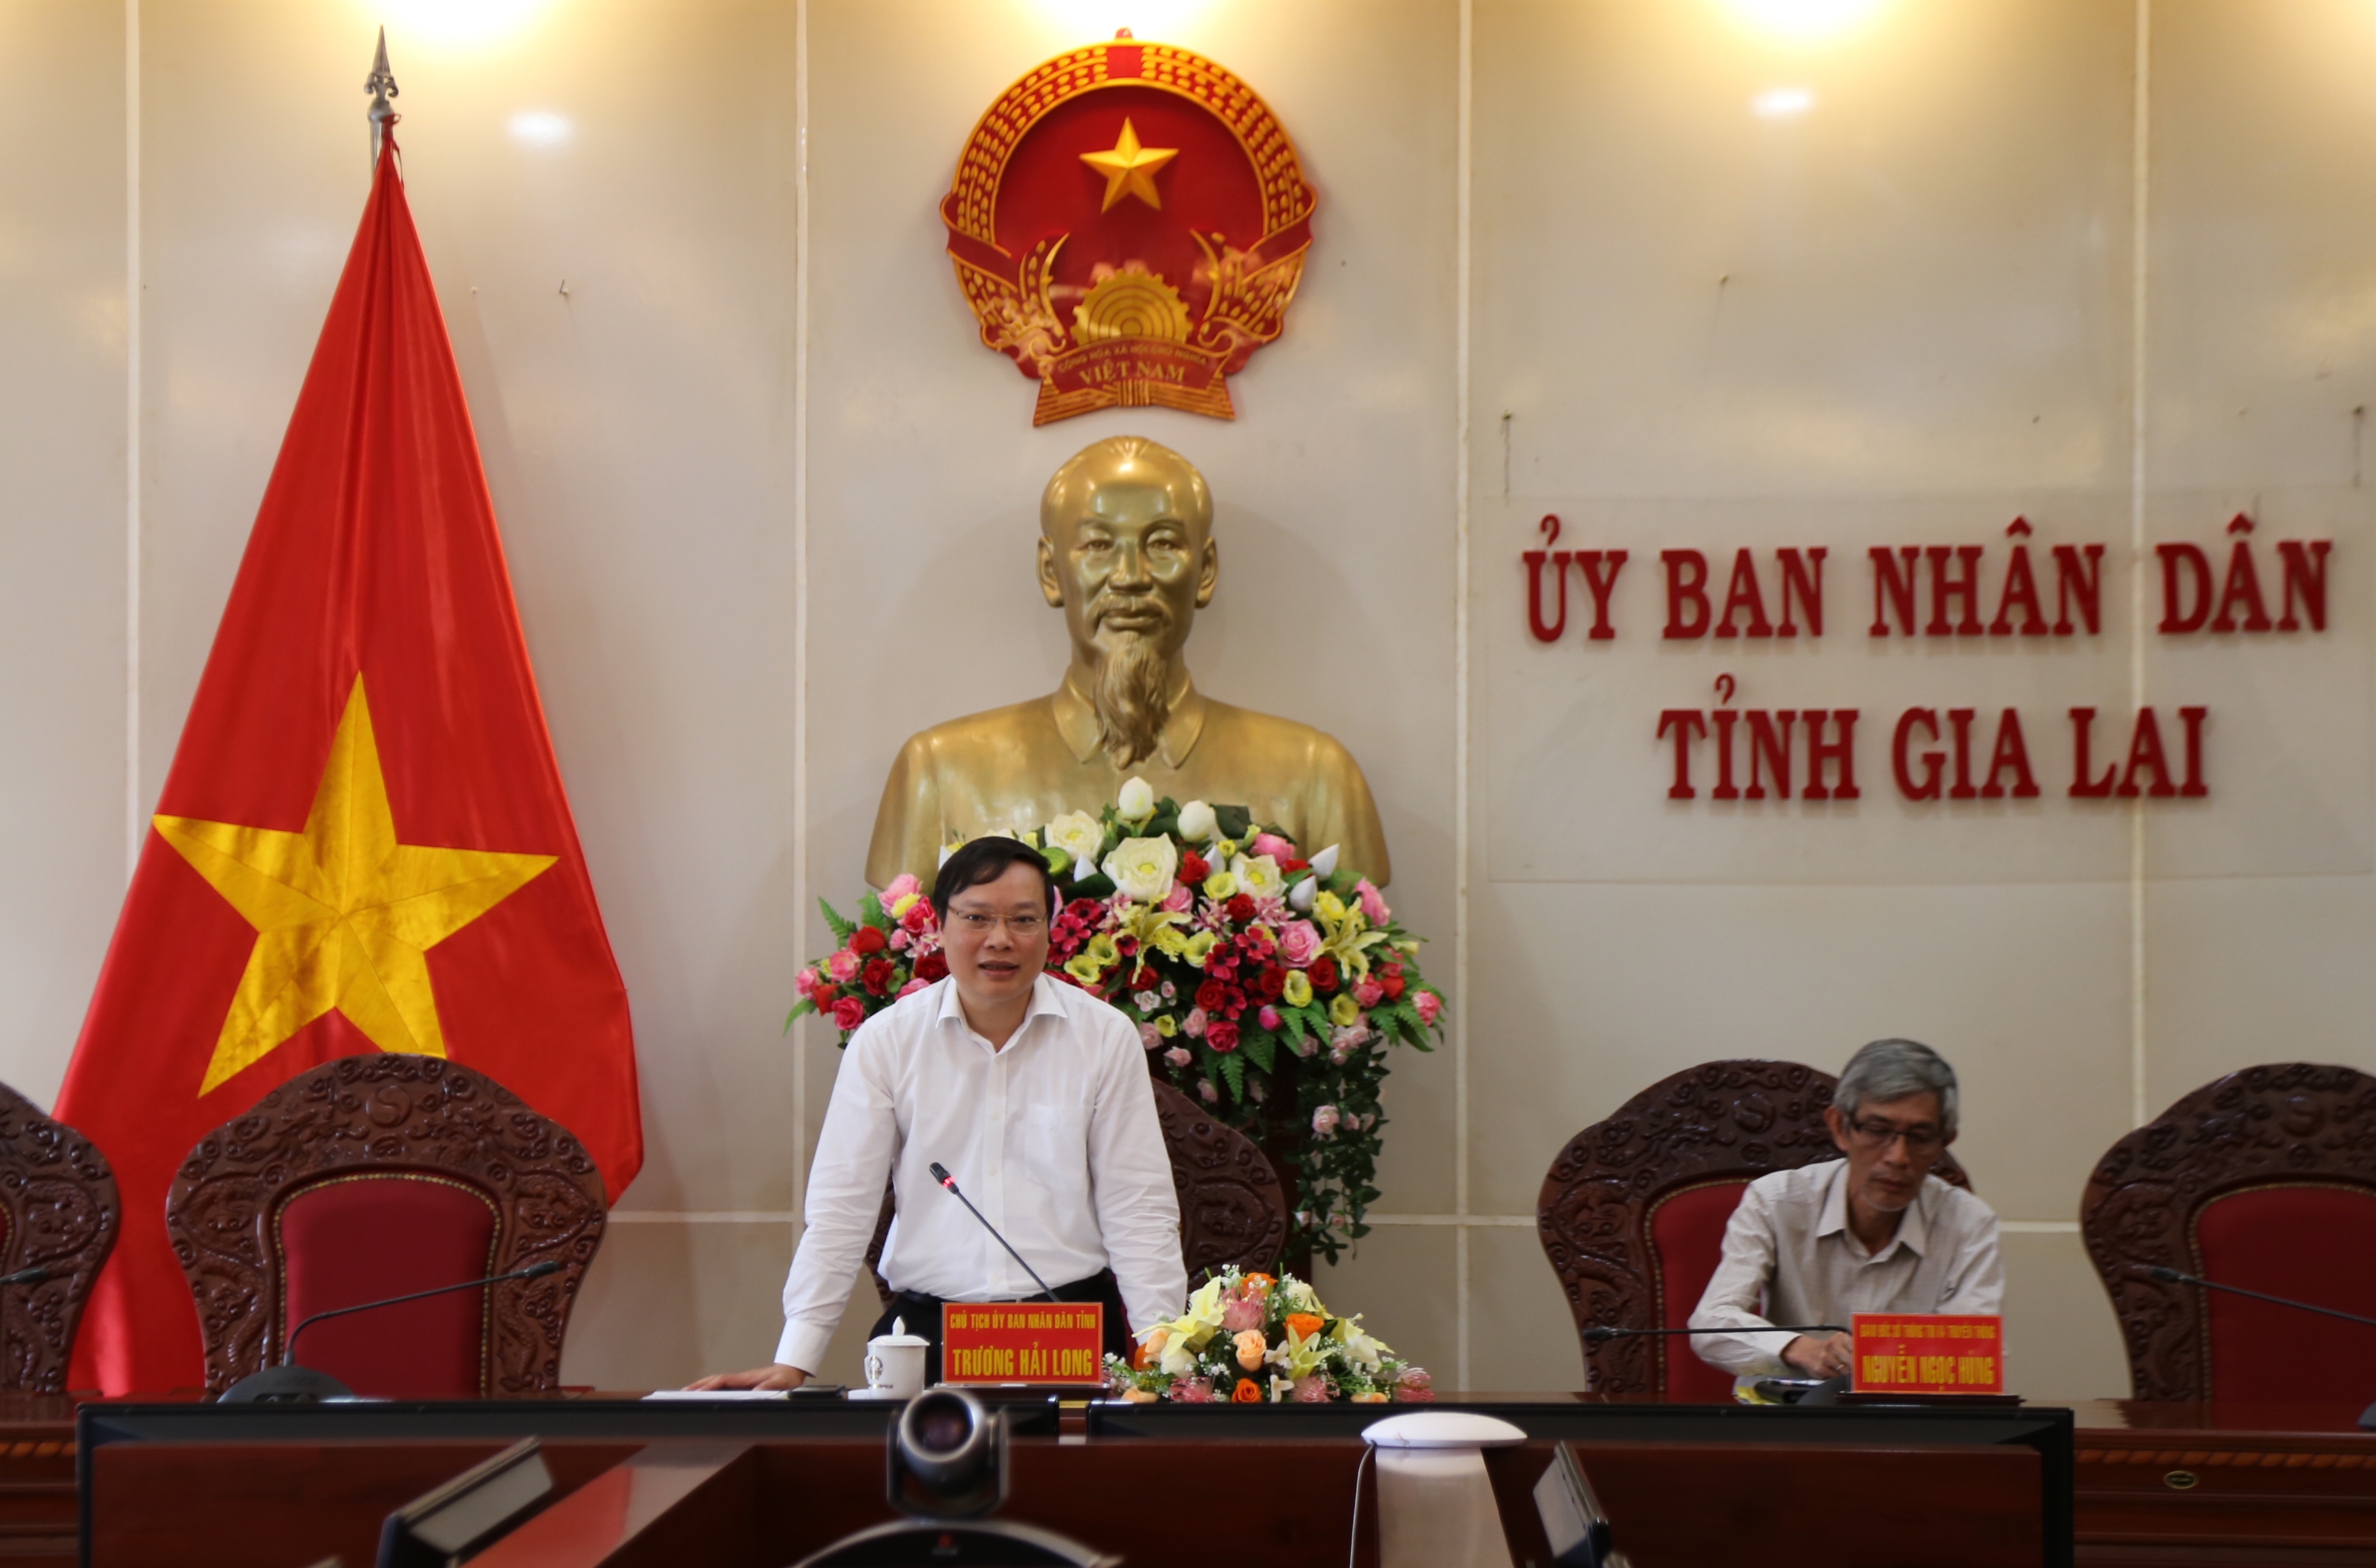 Chủ tịch UBND tỉnh Trương Hải Long phát biểu tại buổi làm việc. Ảnh: Phương Linh